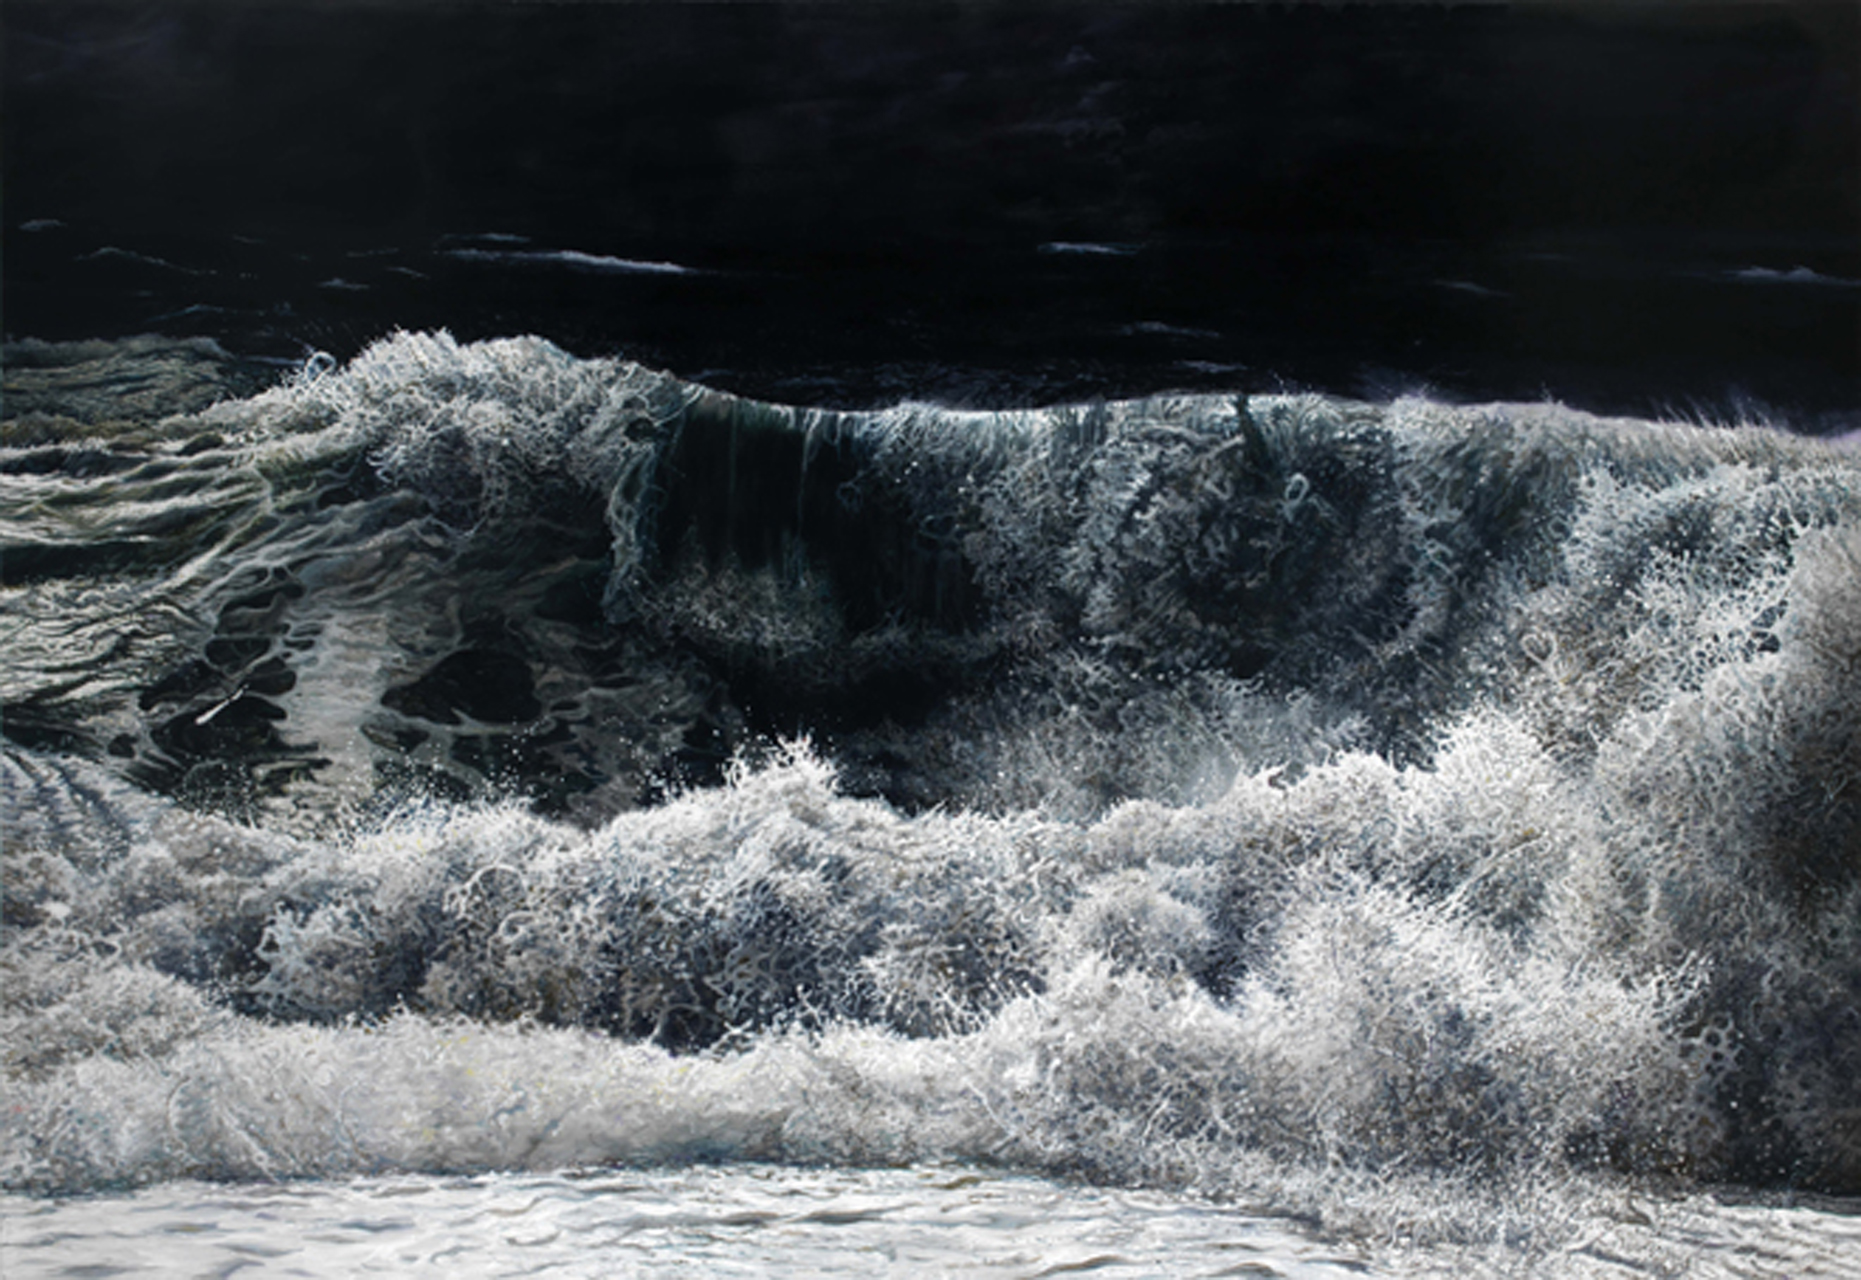 Reinhard Pods, Ohne Titel (will), 1981, Oil on canvas, 200 x 220.3 cm